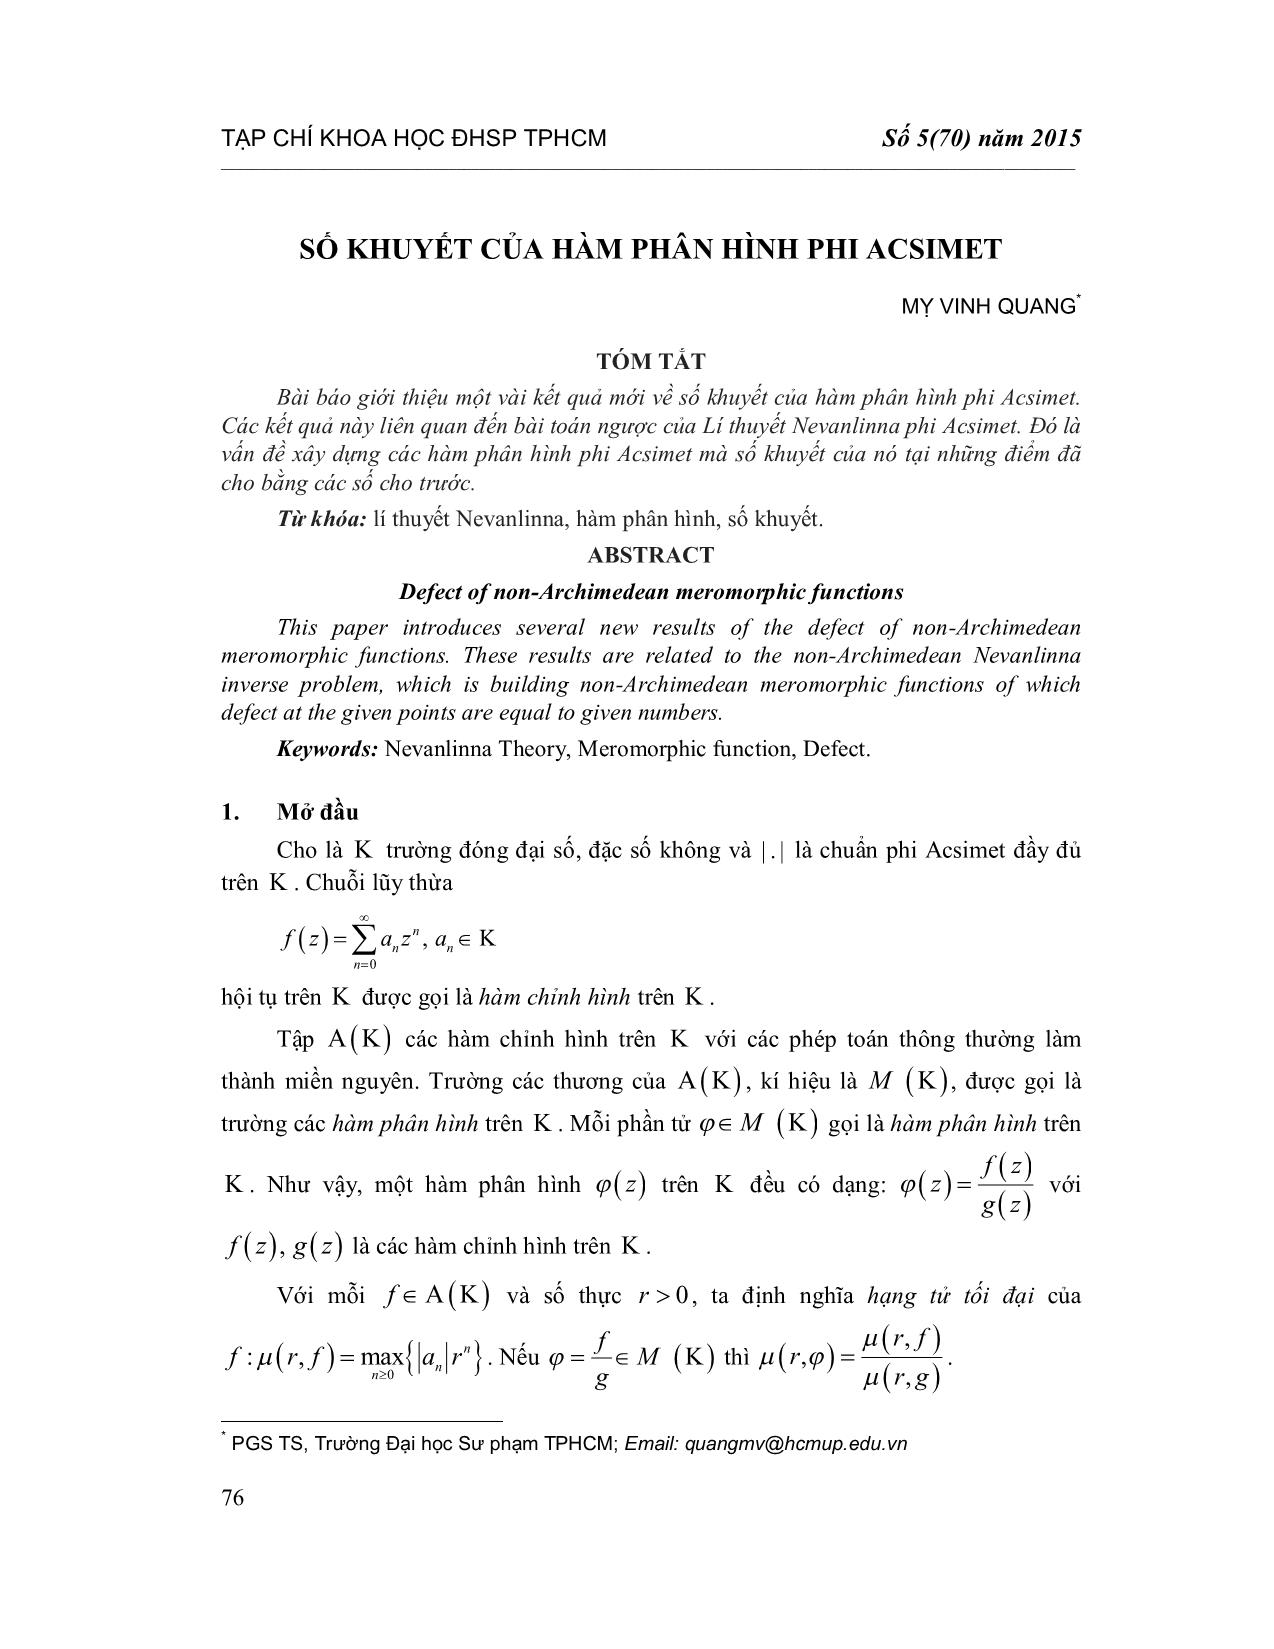 Số khuyết của hàm phân hình phi Acsimet trang 1